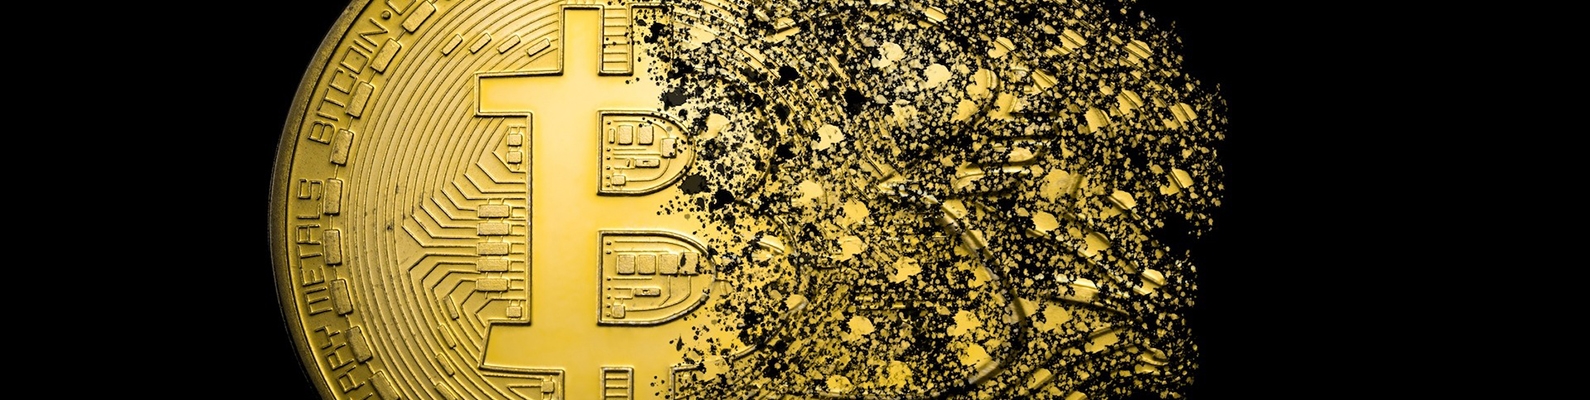 GOLD, coins, bitcoins, logo